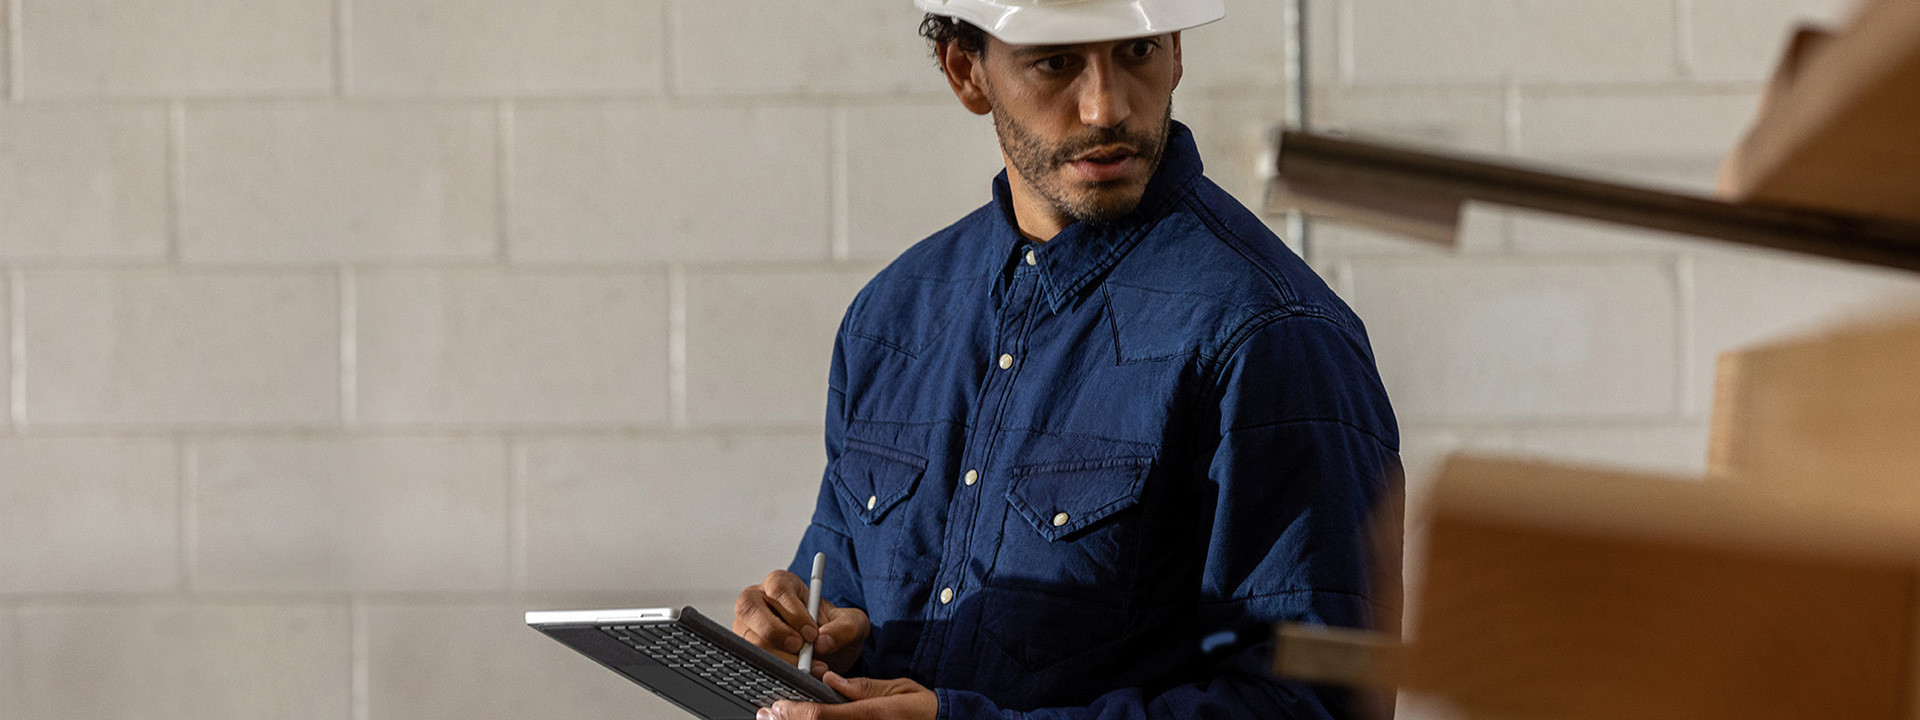 Ein Arbeiter mit einem Schutzhelm in einer industriellen Umgebung hält ein Surface Go 2 im Tablet-Modus in der Hand.